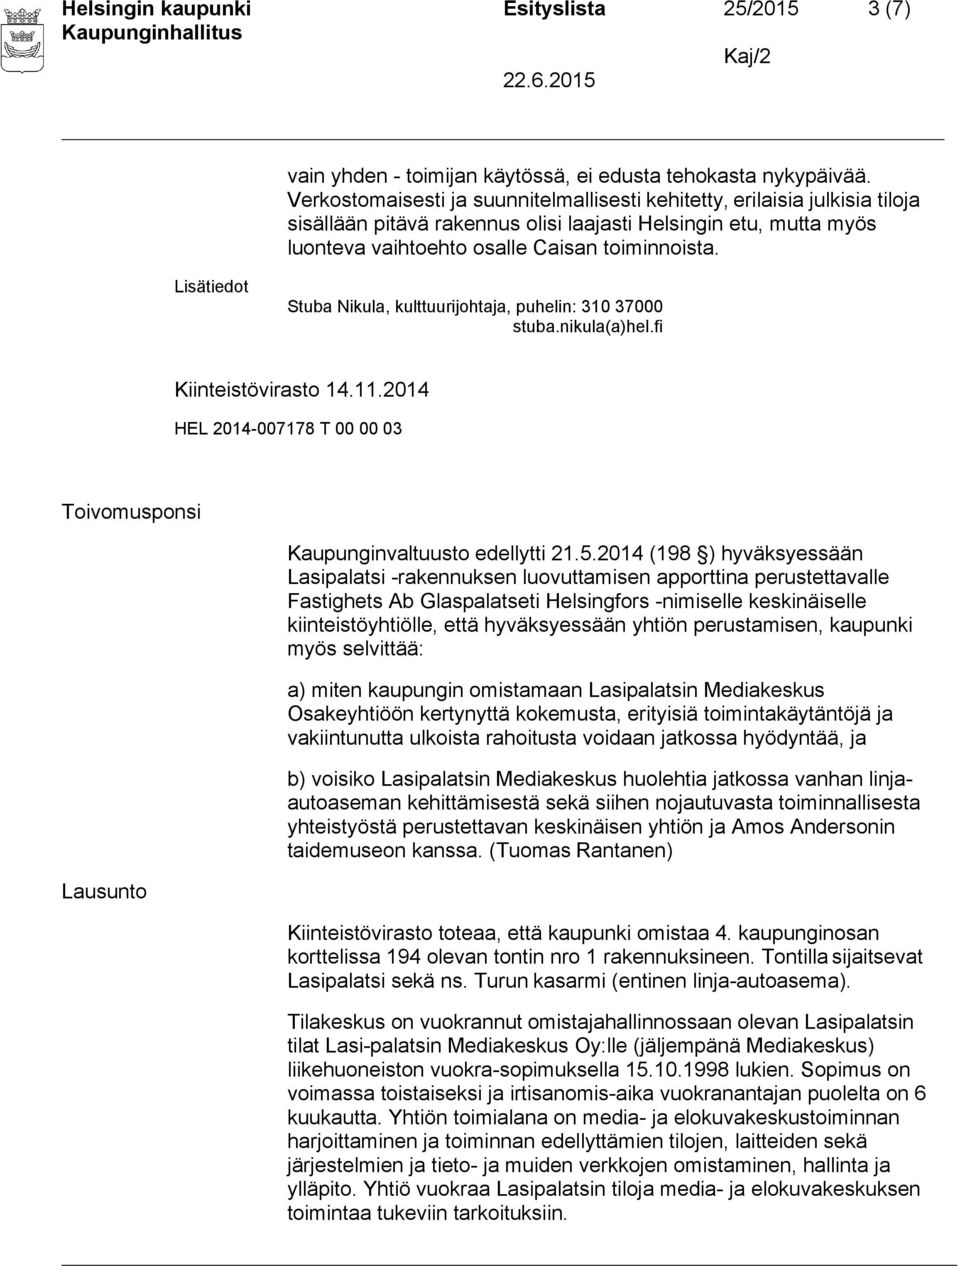 Stuba Nikula, kulttuurijohtaja, puhelin: 310 37000 stuba.nikula(a)hel.fi Kiinteistövirasto 14.11.2014 Toivomusponsi Lausunto Kaupunginvaltuusto edellytti 21.5.